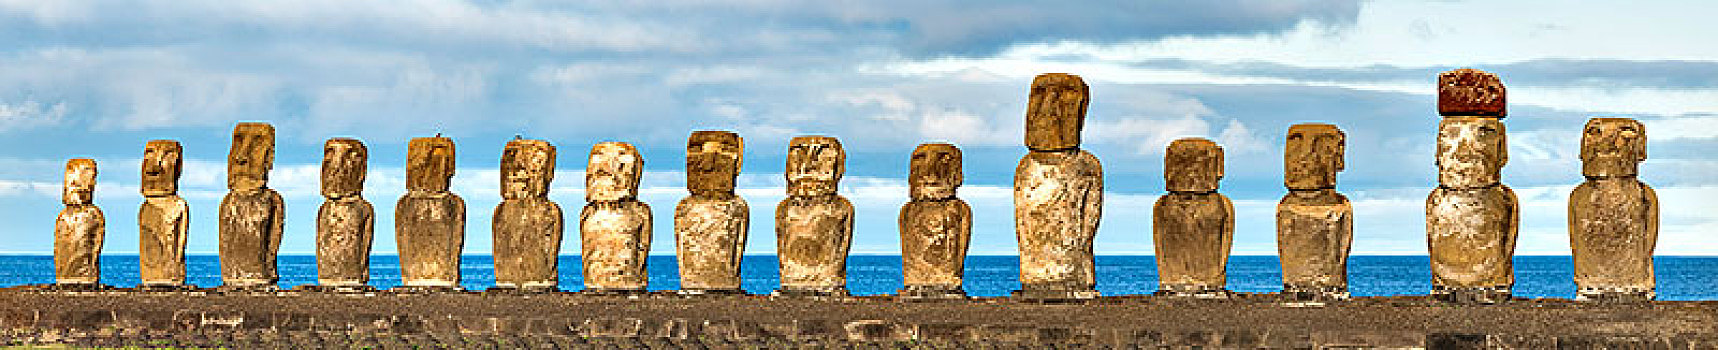 石头,塑像,多,复活节岛石像,复活节岛,智利,南美